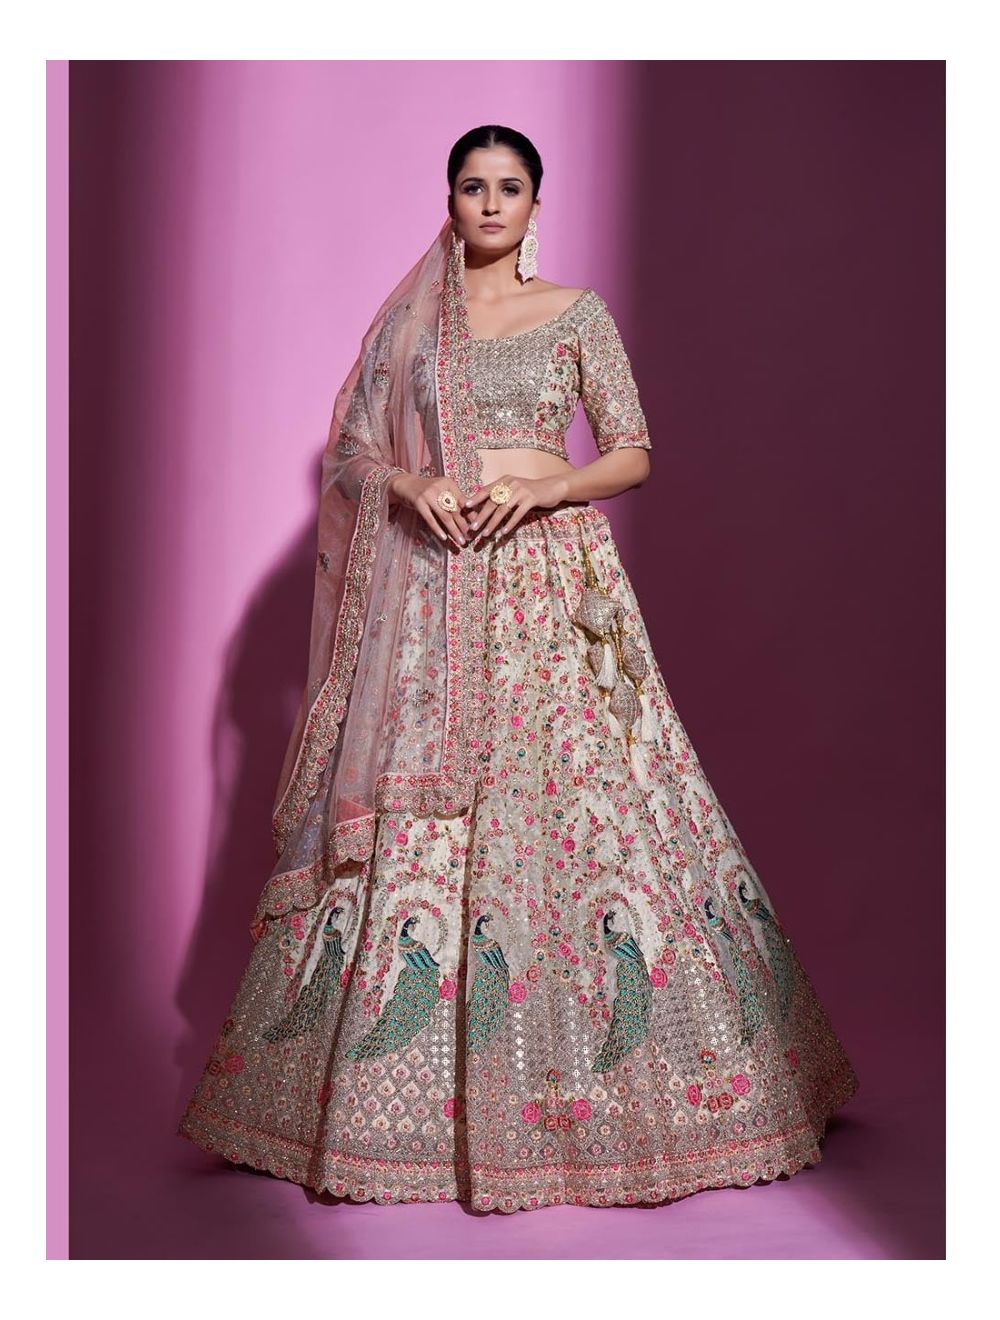 Indian Wedding Dress for Guest: 30+ Modern Wedding Outfit Ideas for guests  | Indian wedding dress modern, Modern indian wedding, Indian wedding dress